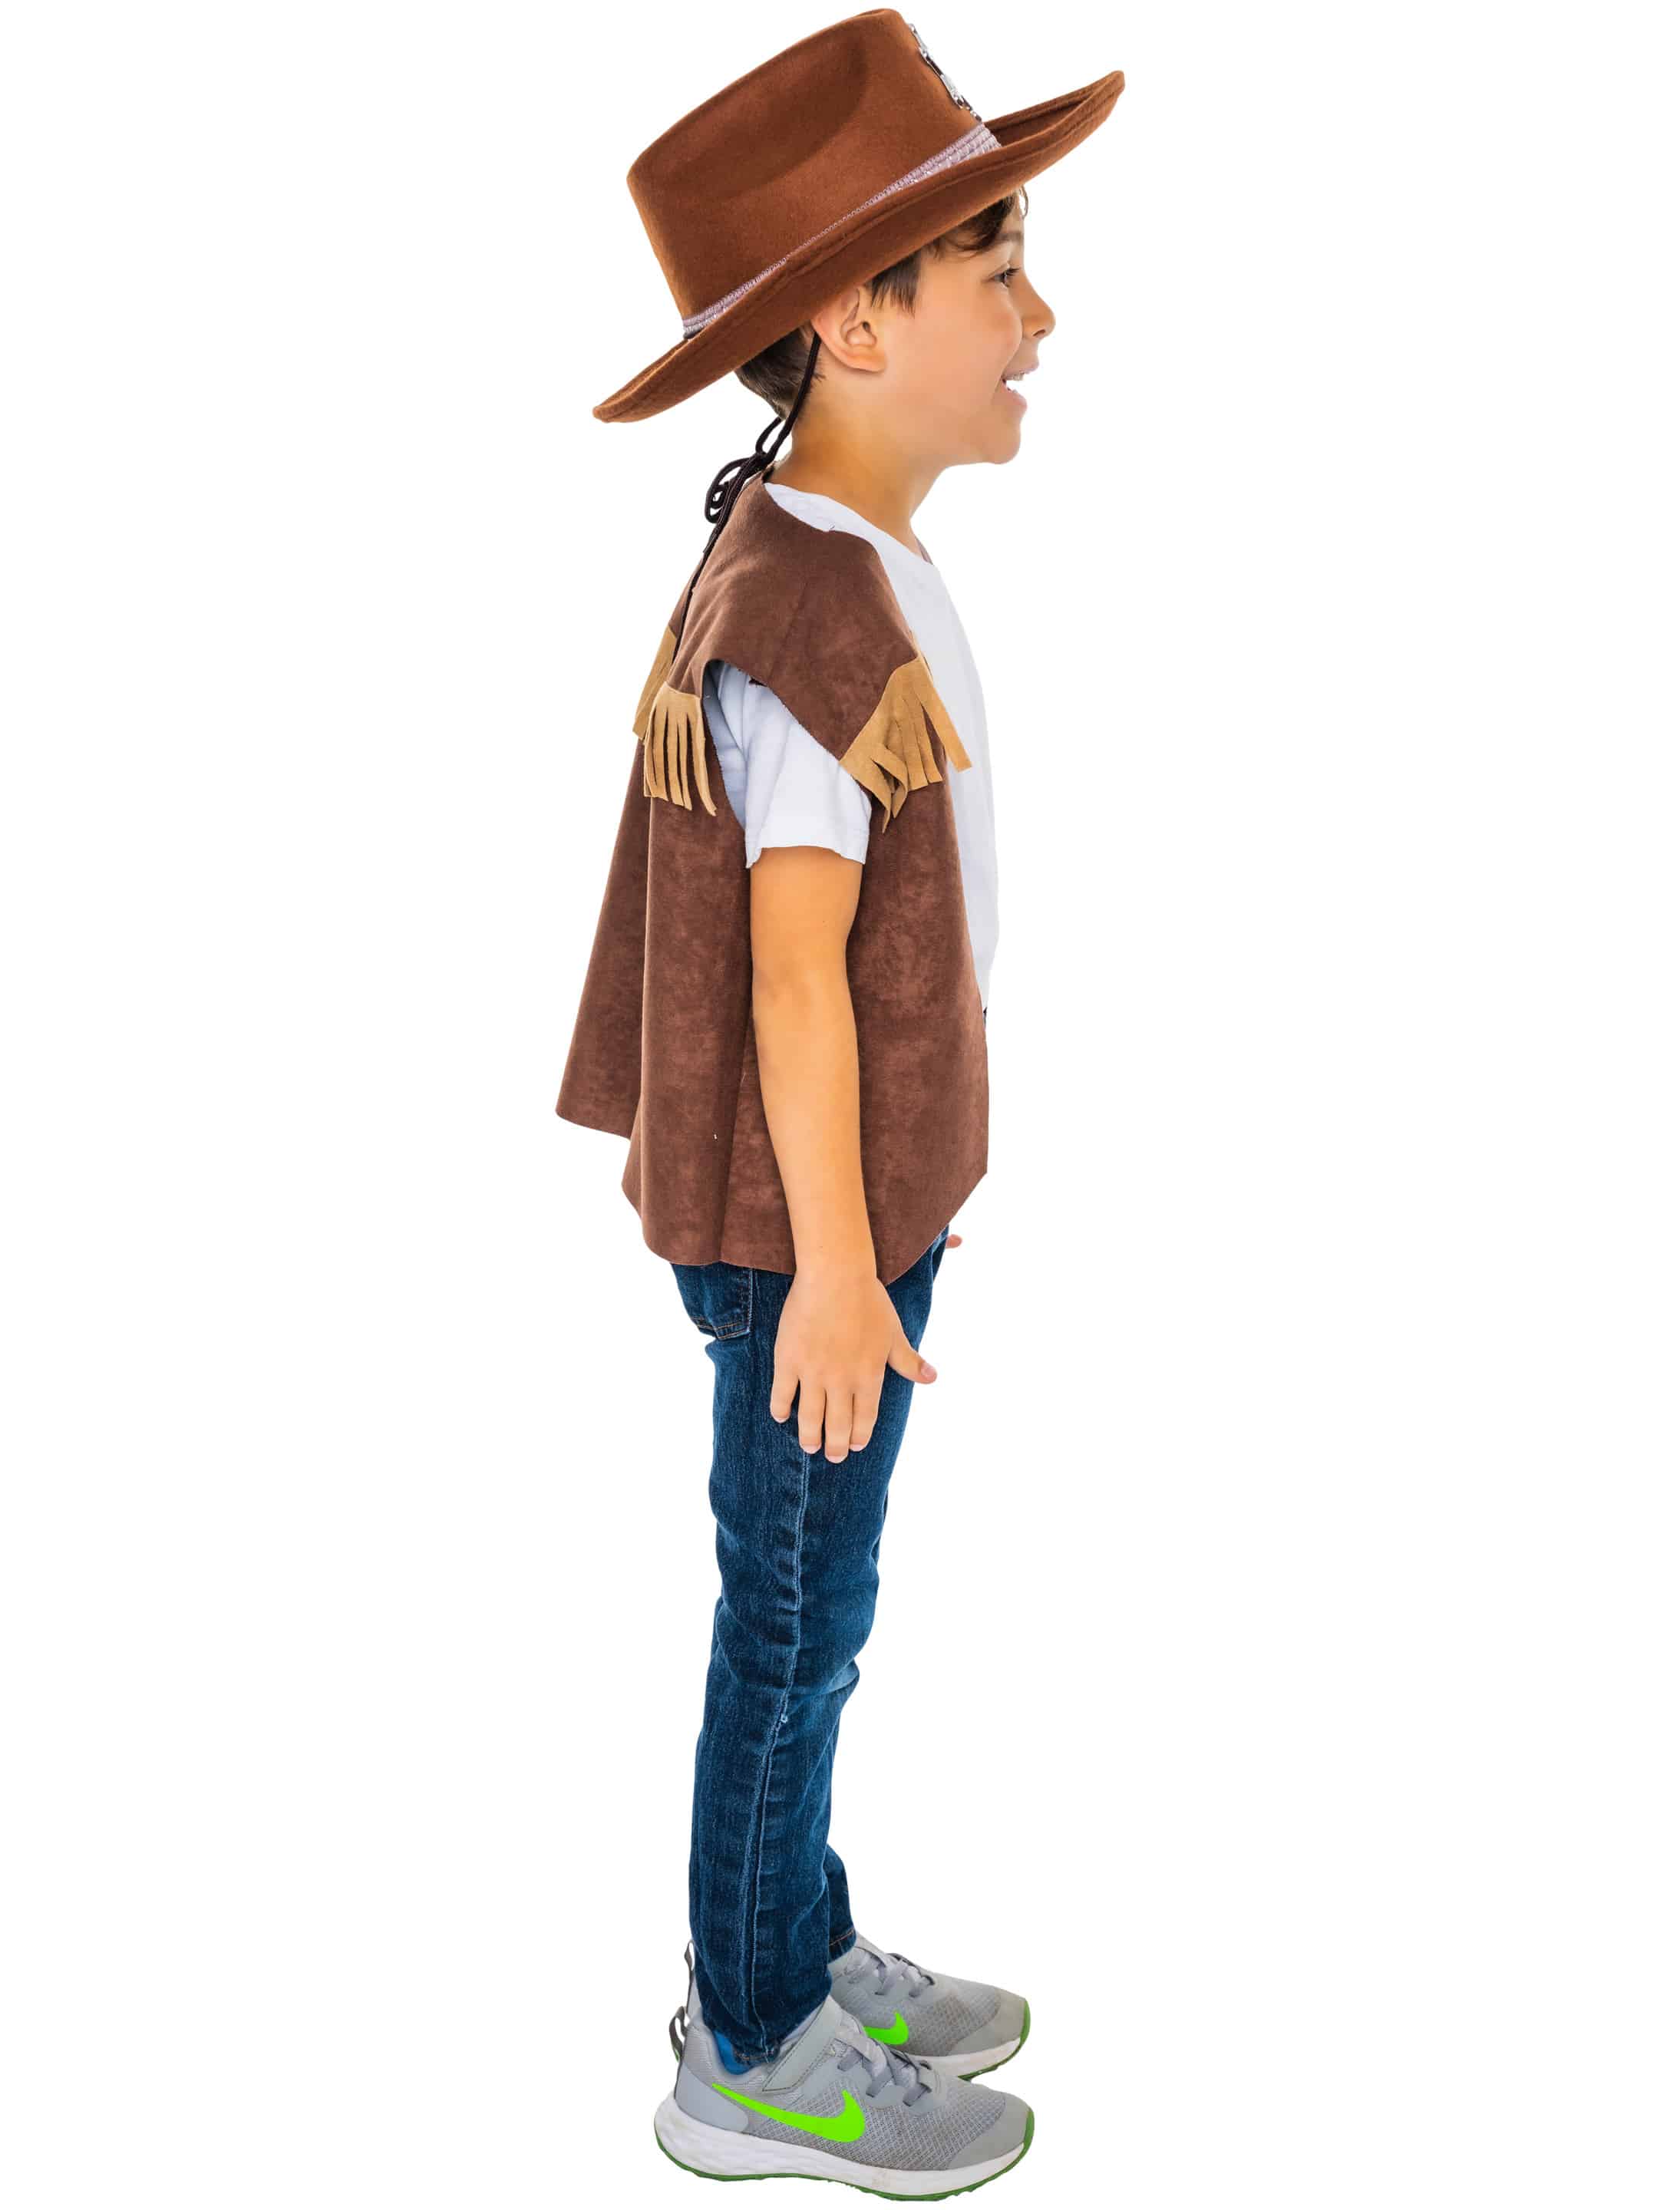 Weste Cowboy Kinder mit Stern braun 116-128